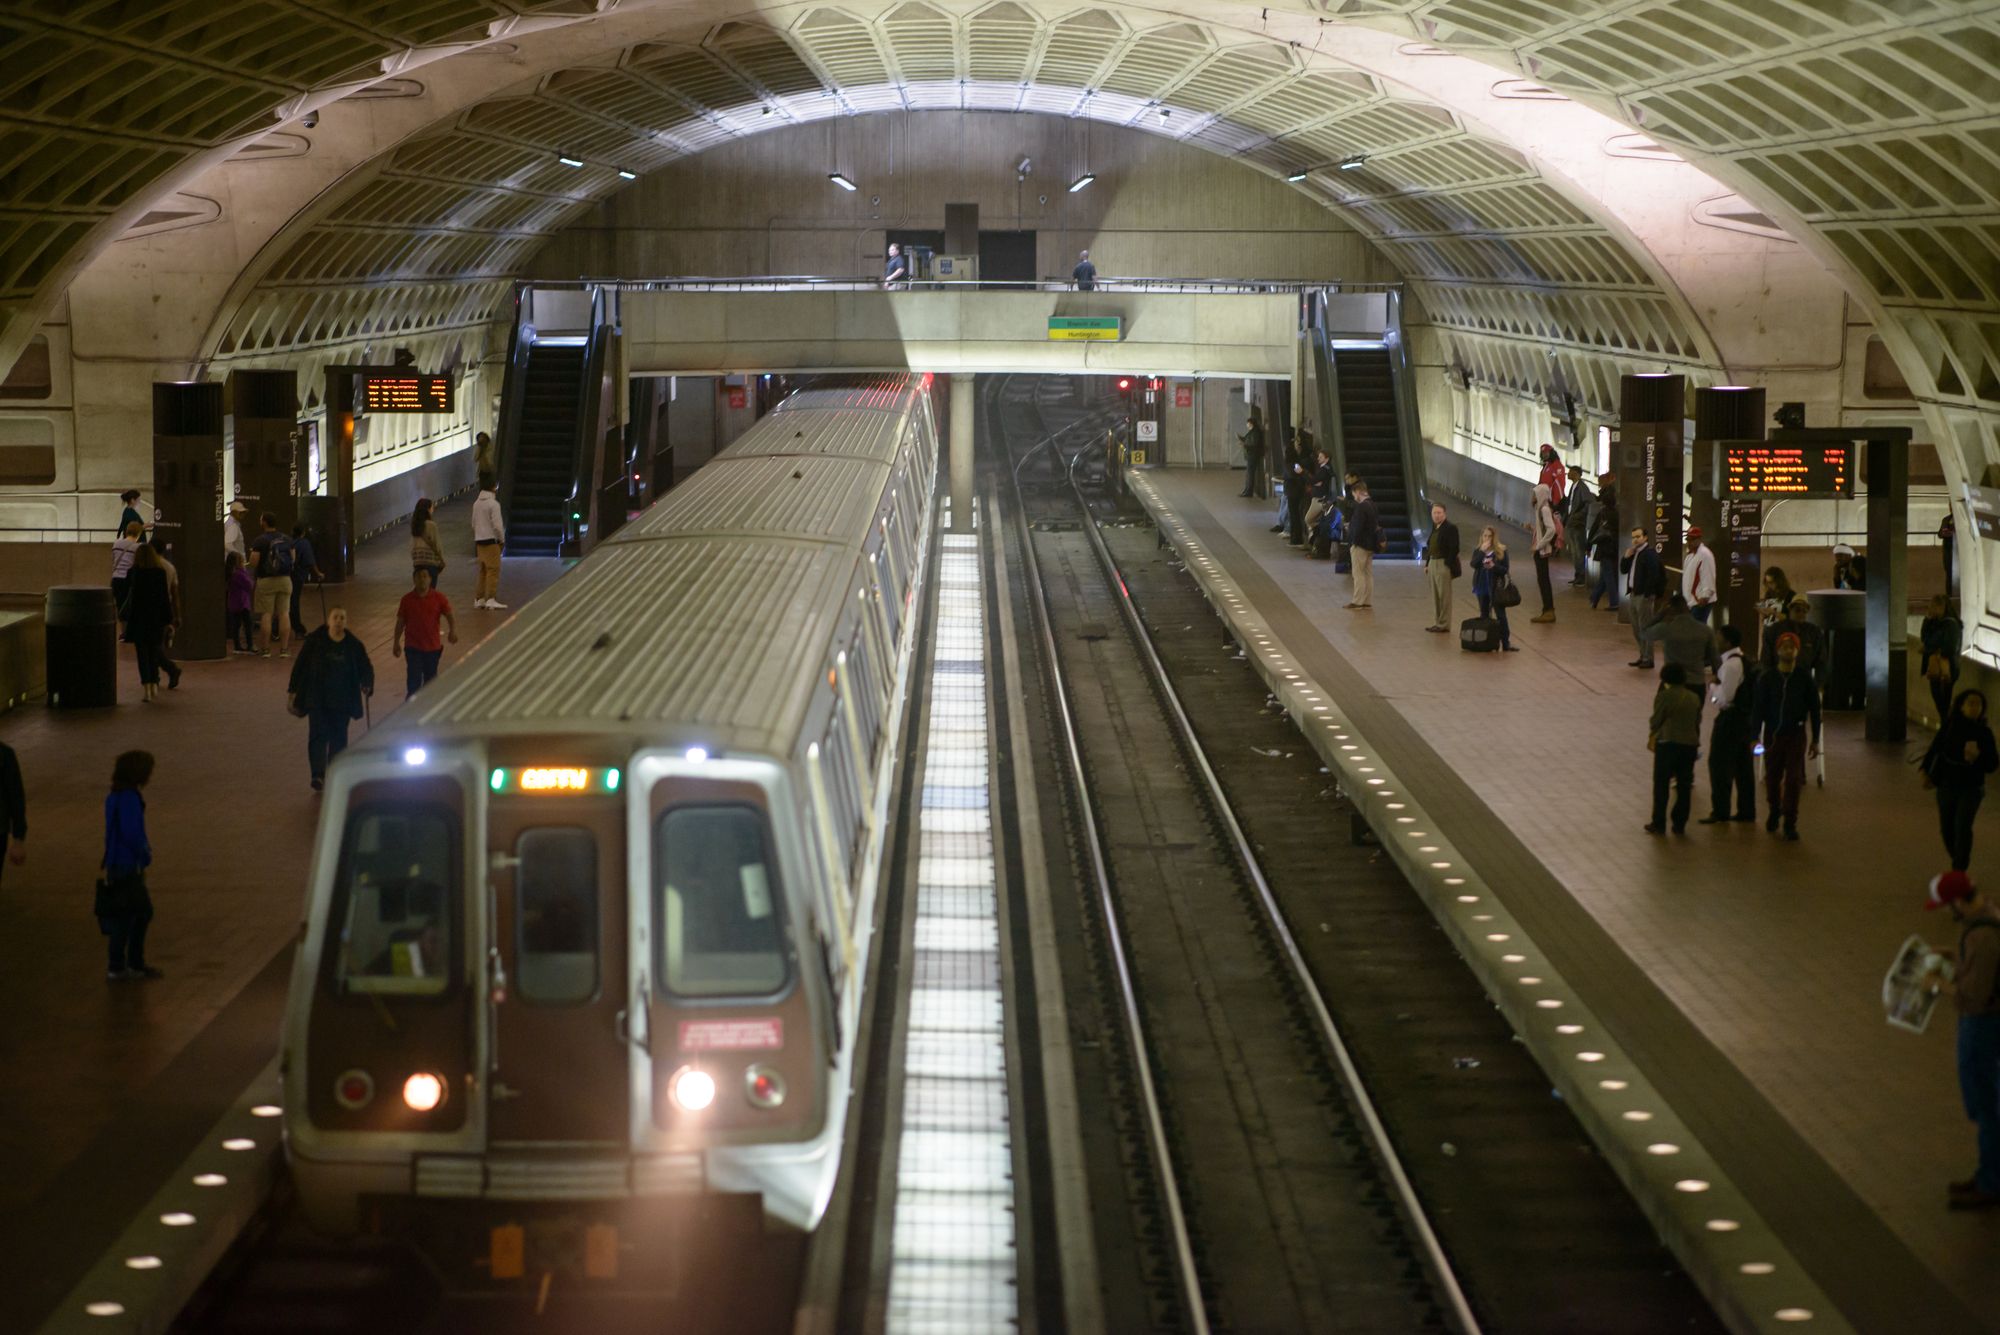 WASHINGTON, DISTRICT OF COLUMBIA - APRIL 14: View of Washington DC Metro Subway Train Station on April 14, 2017